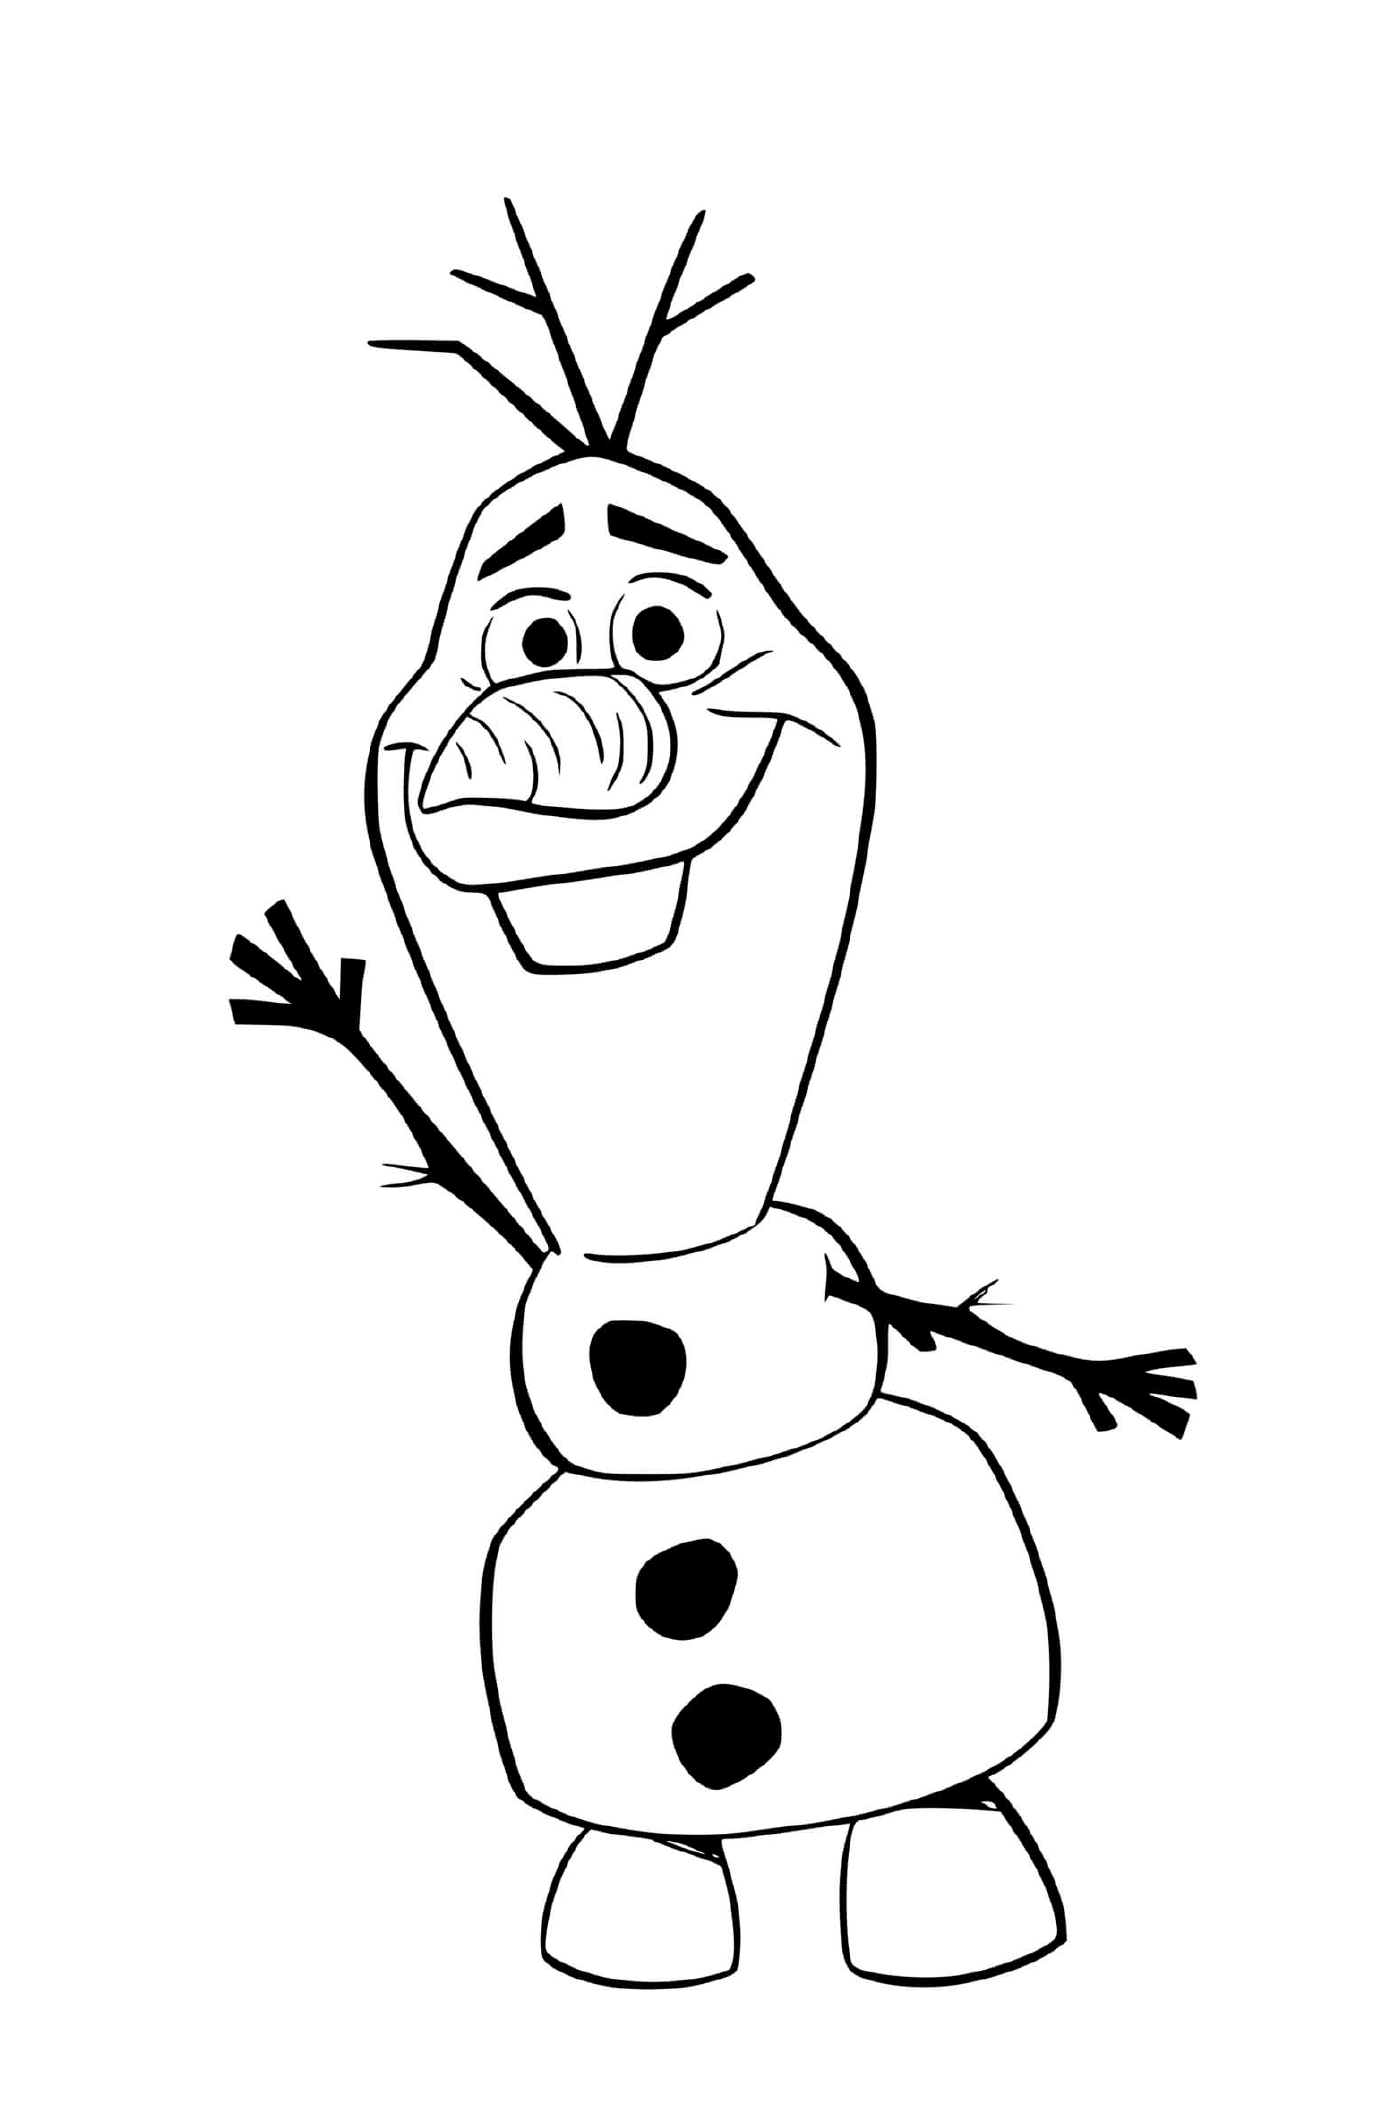   Olaf au royaume d'Arendelle 